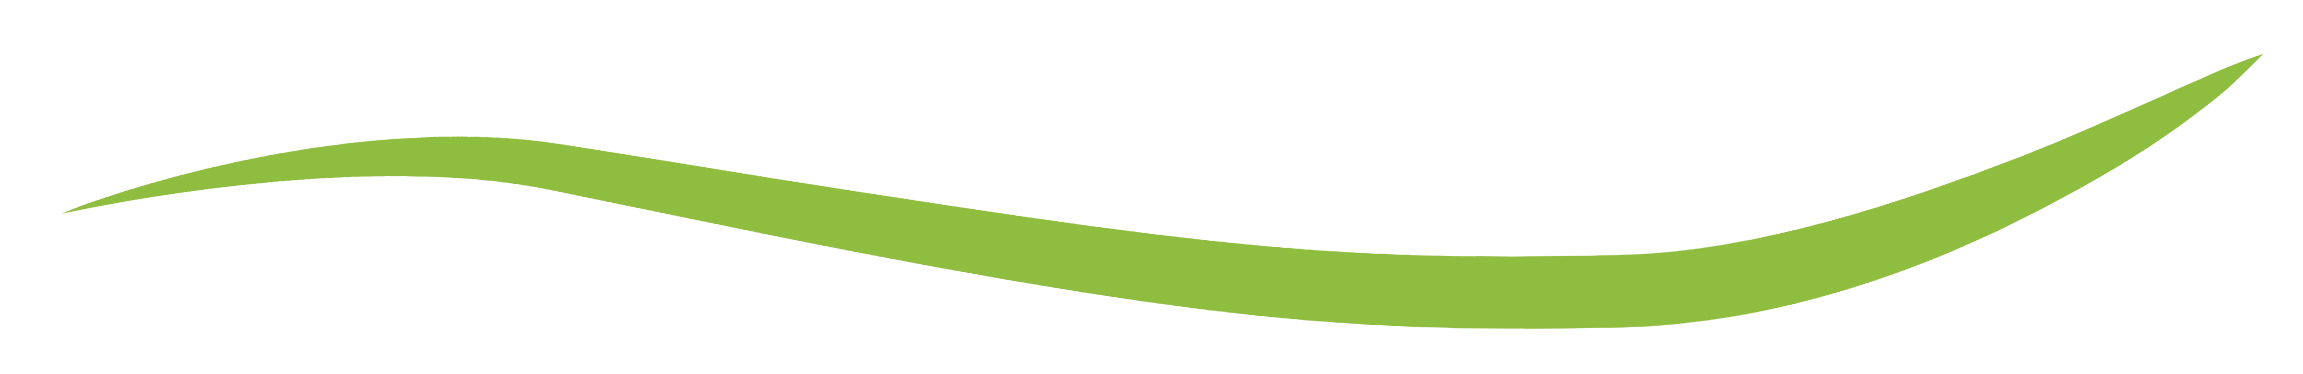 linea verde del logo